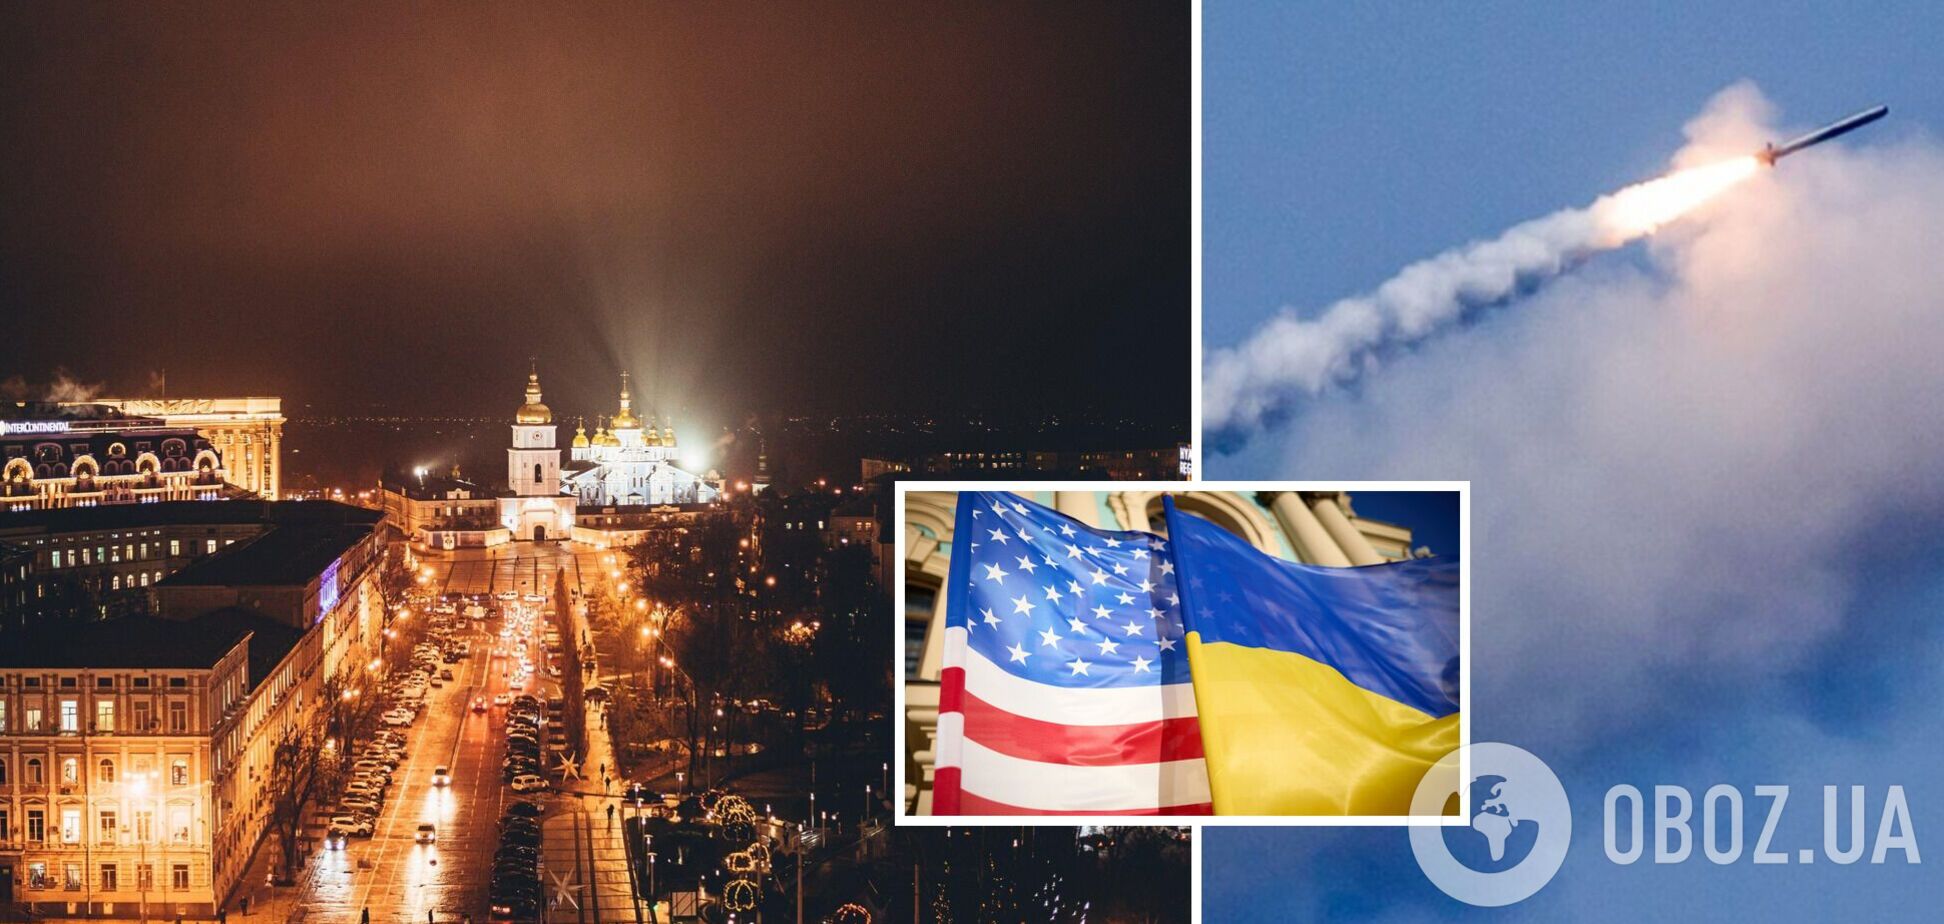 'Не игнорируйте воздушные тревоги': посольство США в Украине предупредило американцев о повышенной угрозе ракетных ударов